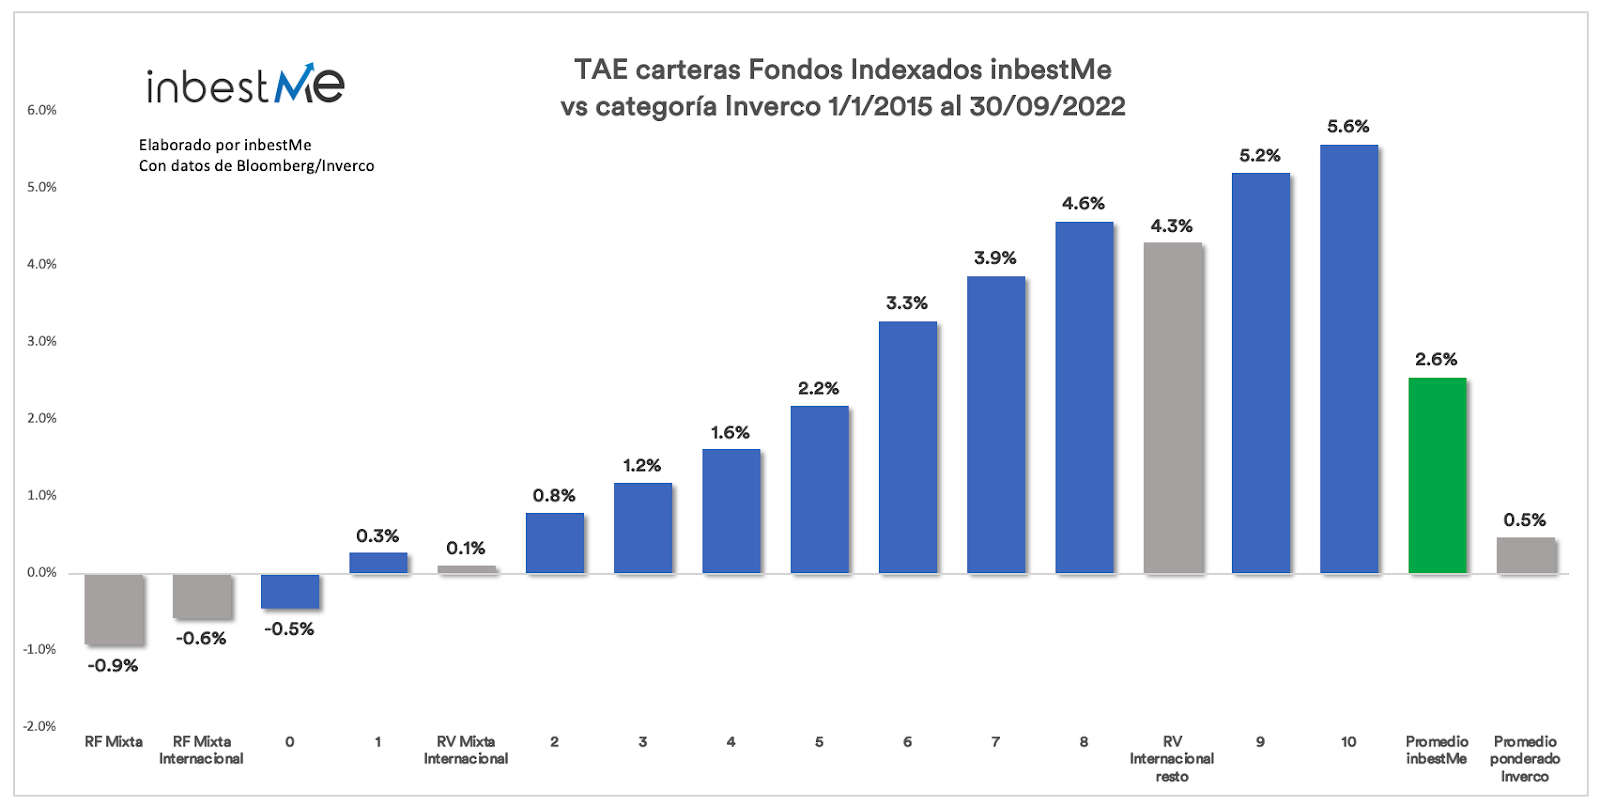 TAE carteras Fondos Indexados inbestMe vs categoría Inverco 1/1/2015 al 30/09/2022